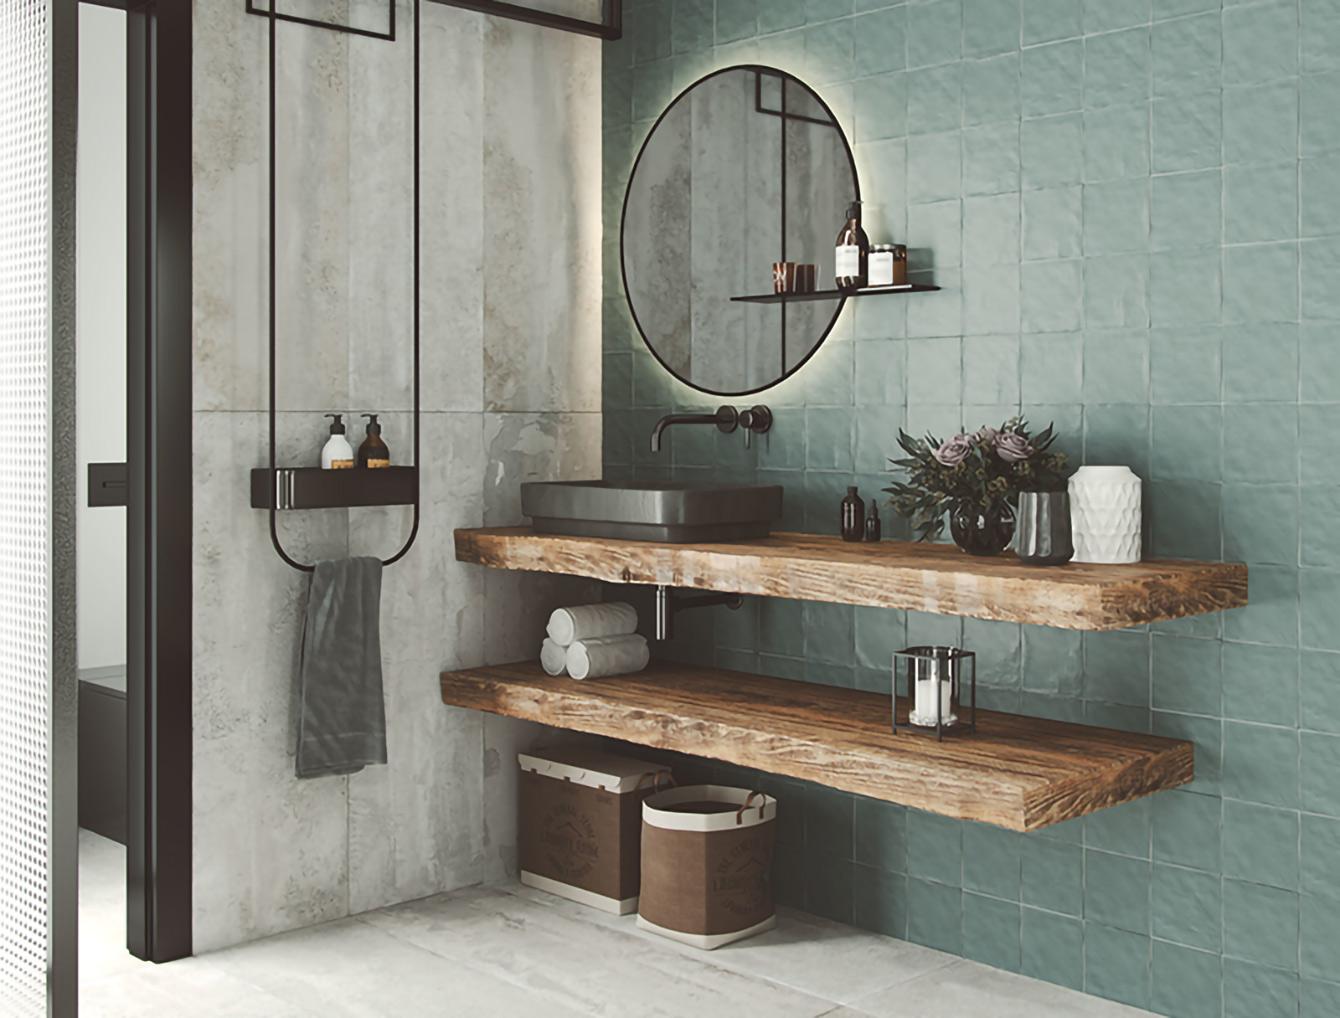 Dans cette salle de bain à l'esprit atelier, les carreaux 15x15 cm en finition mate bosselée vert de gris sont associés à de grands carreaux rectangulaires imitation pierre naturelle